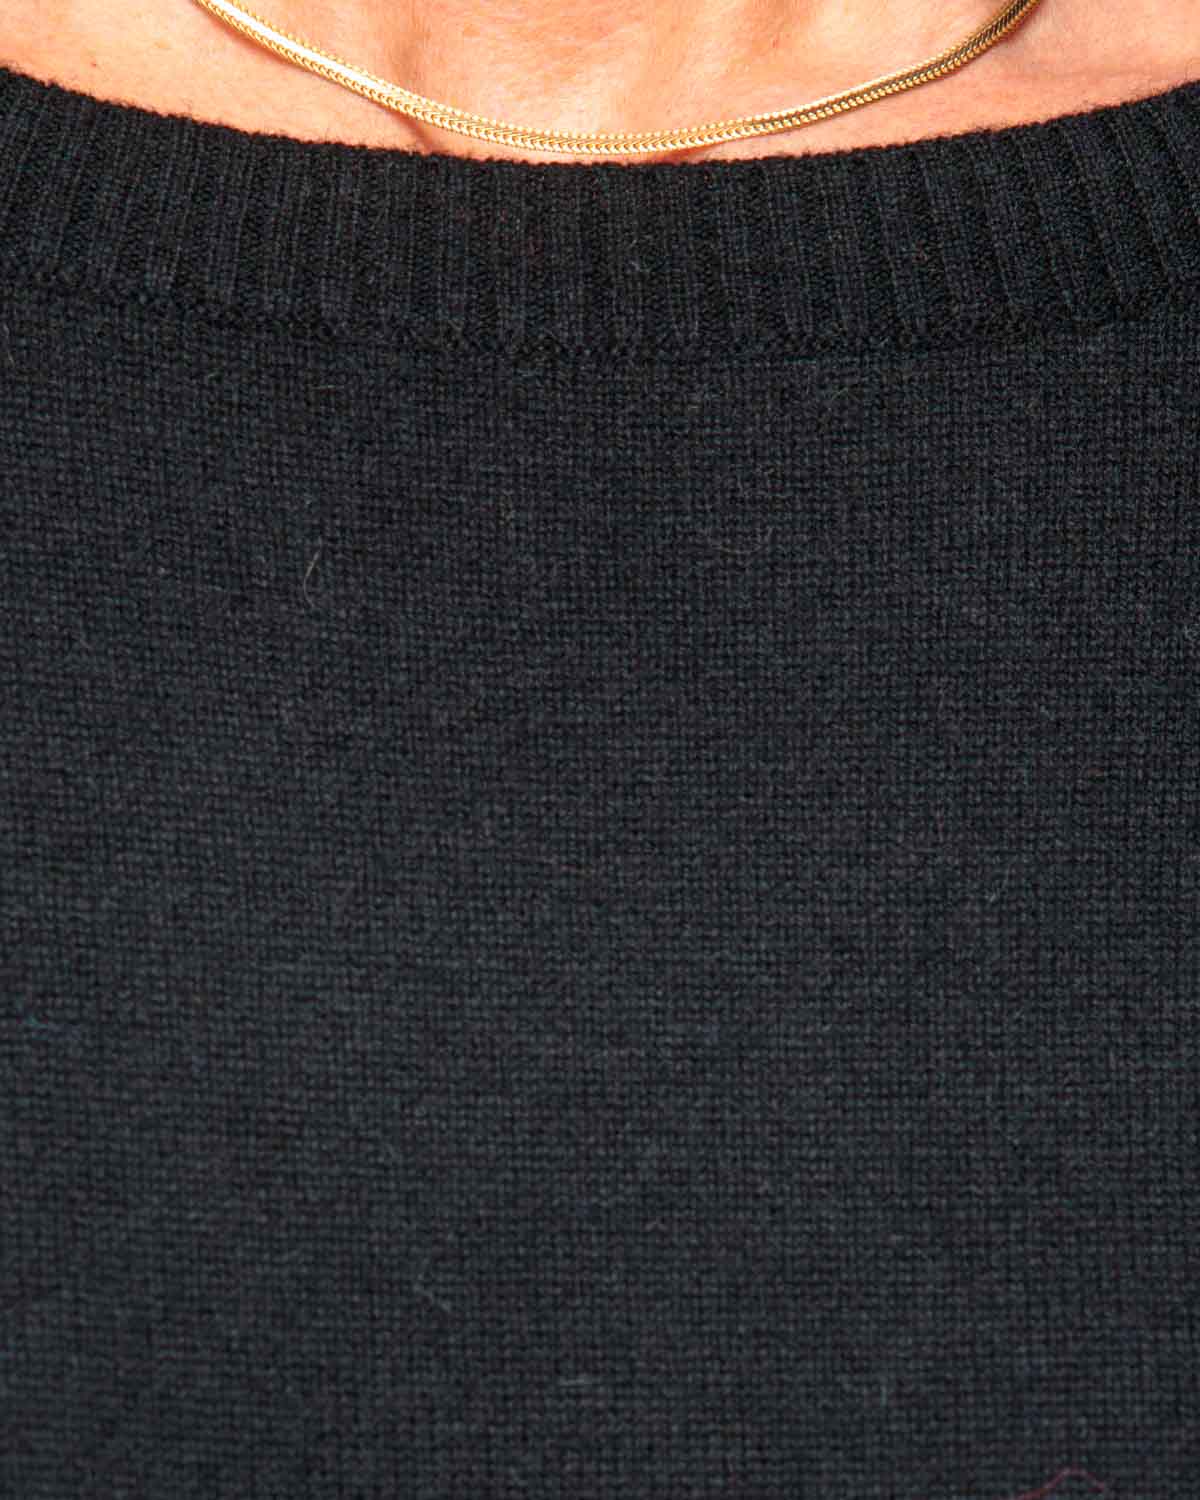 Caroline Cashmere N Sweater in Black